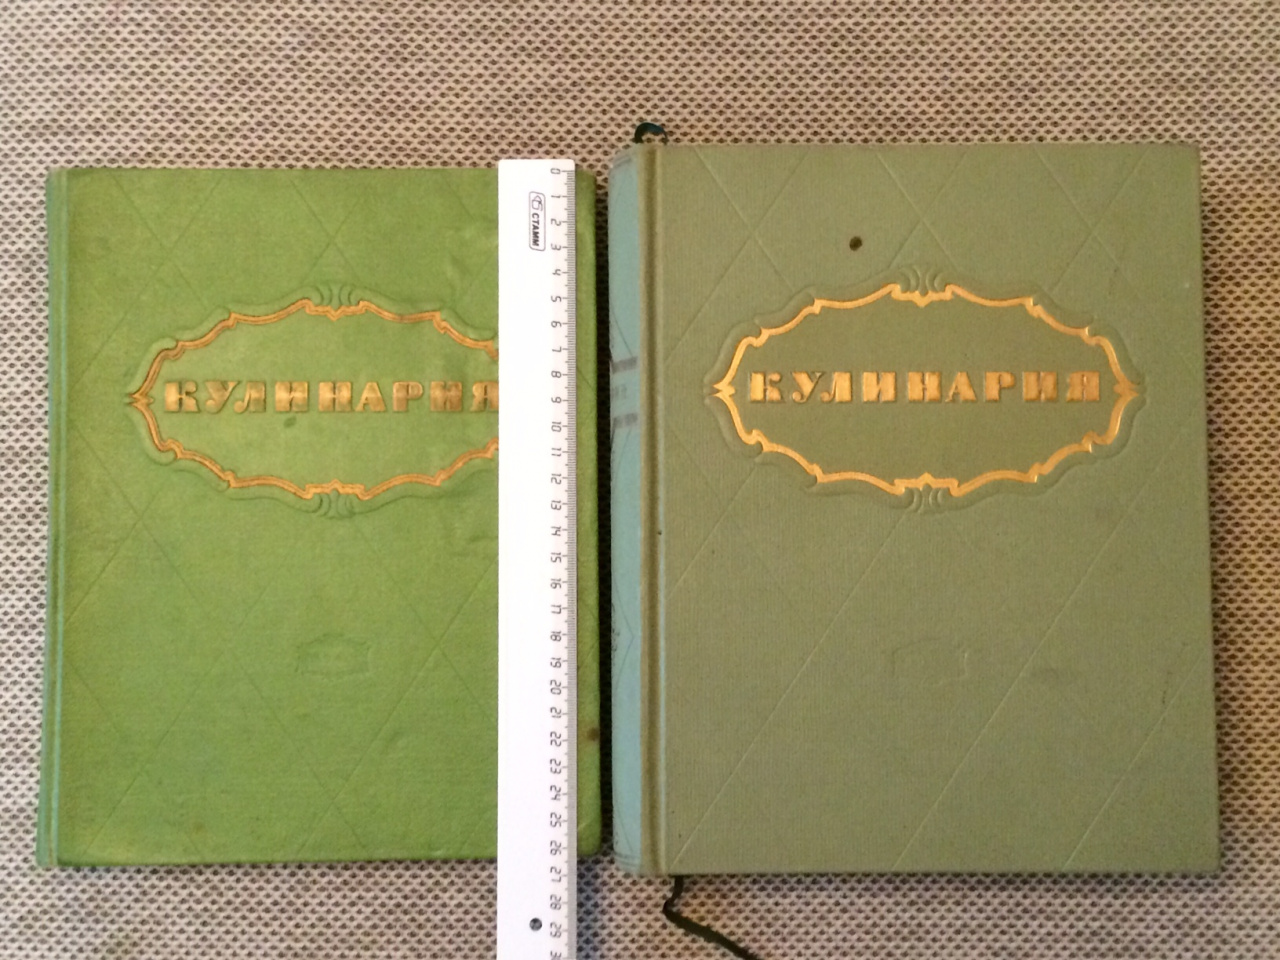 Две книги «Кулинария» 1955 и 1960 год. Рецепты СССР.